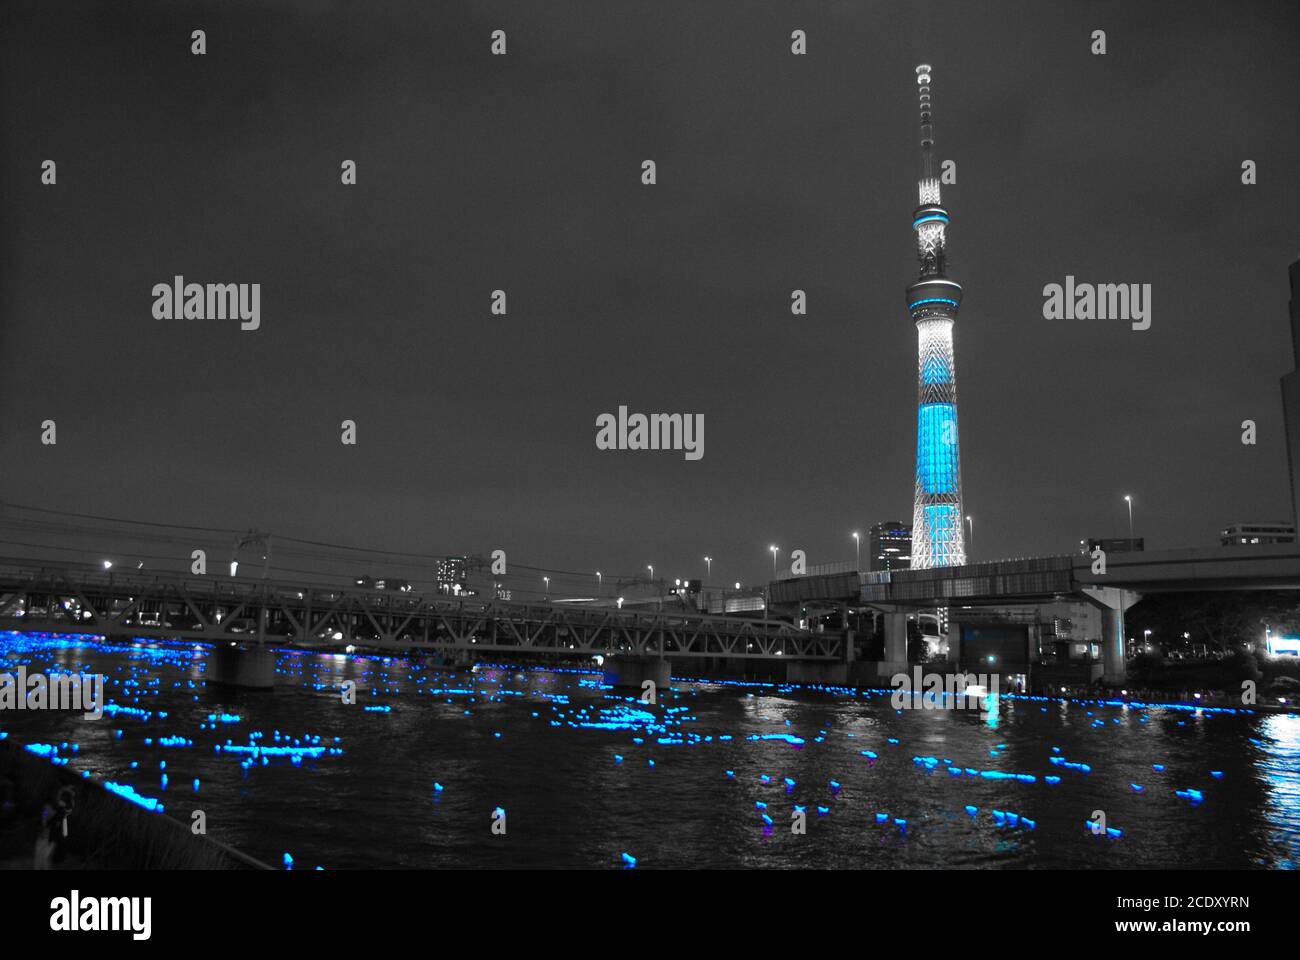 Arbre de ciel et illuminations (Tokyo lucily) monochromatiques Banque D'Images